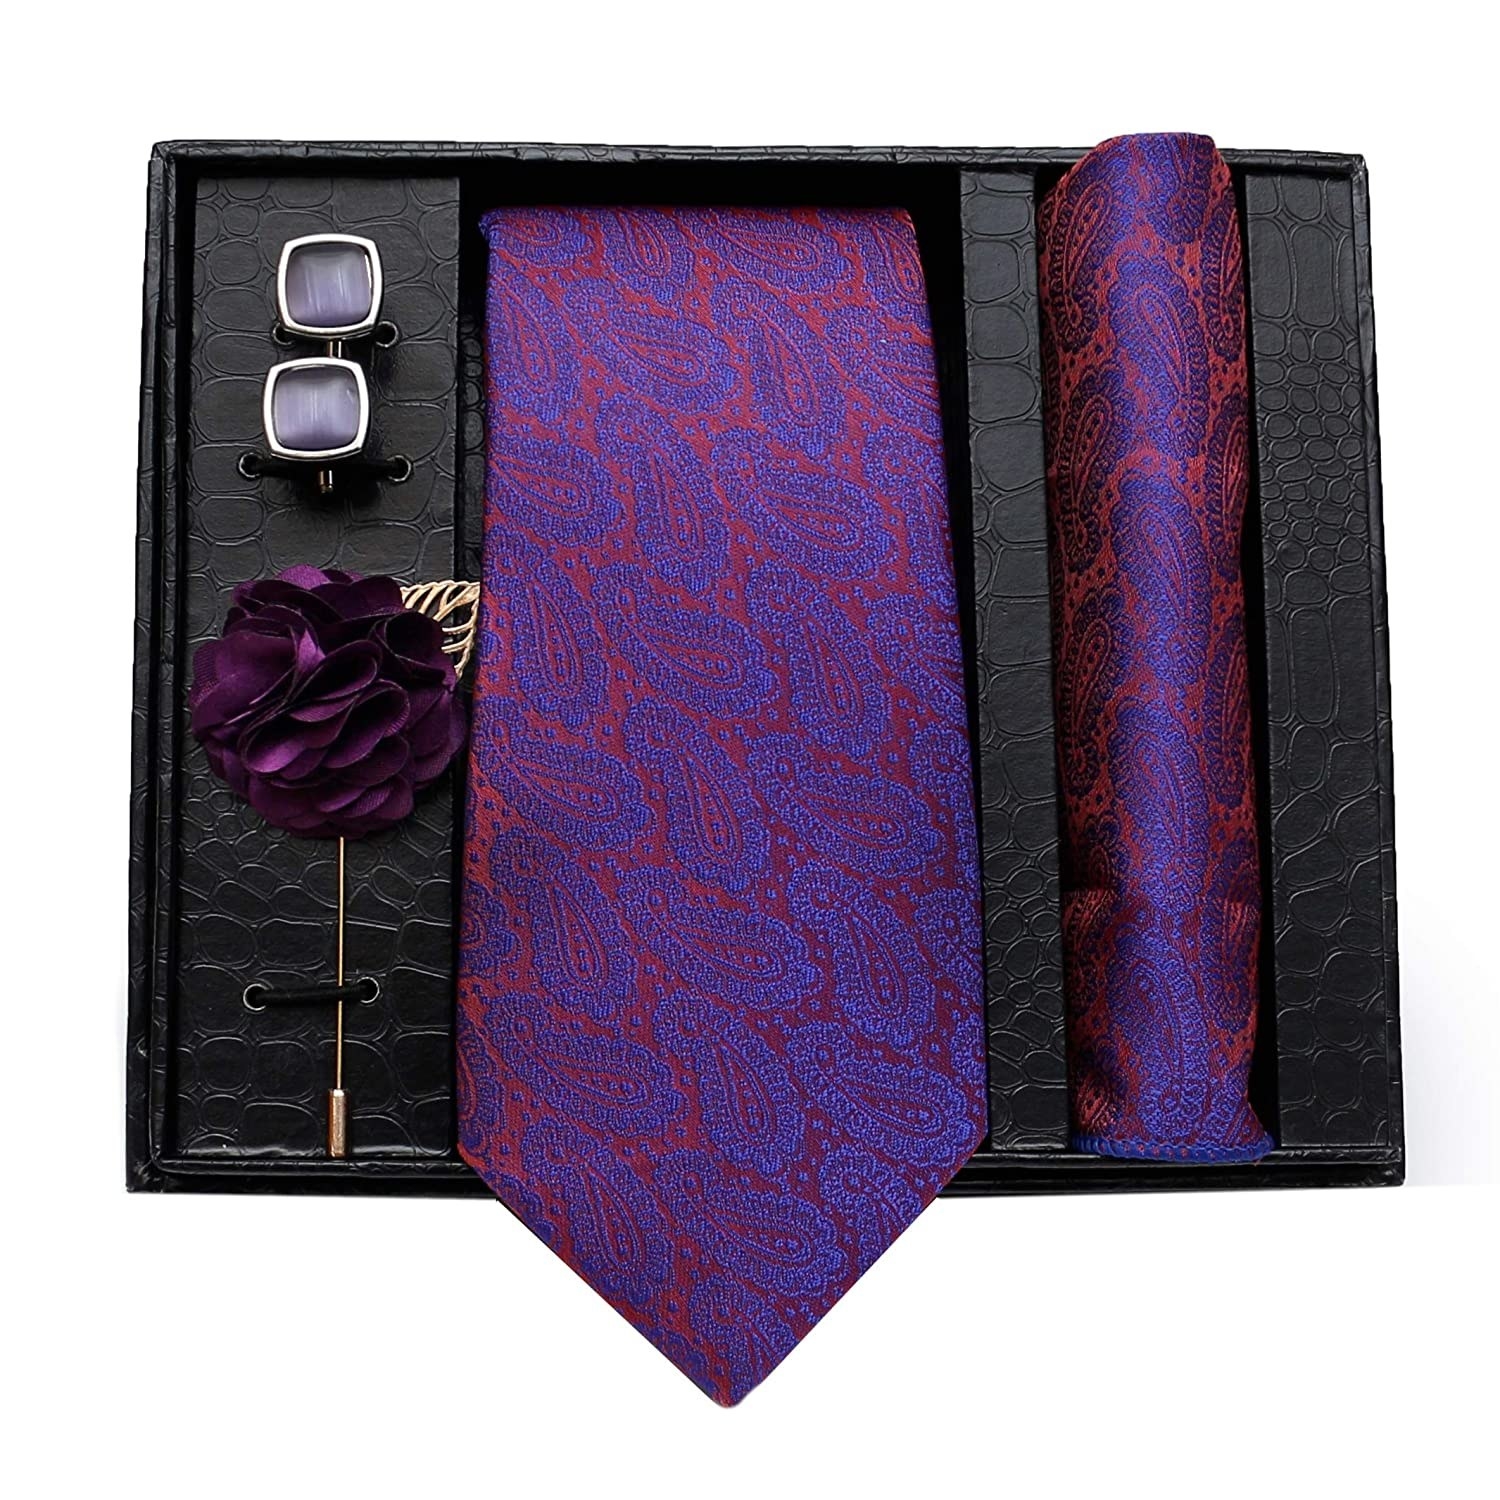 A tie and cufflink set 